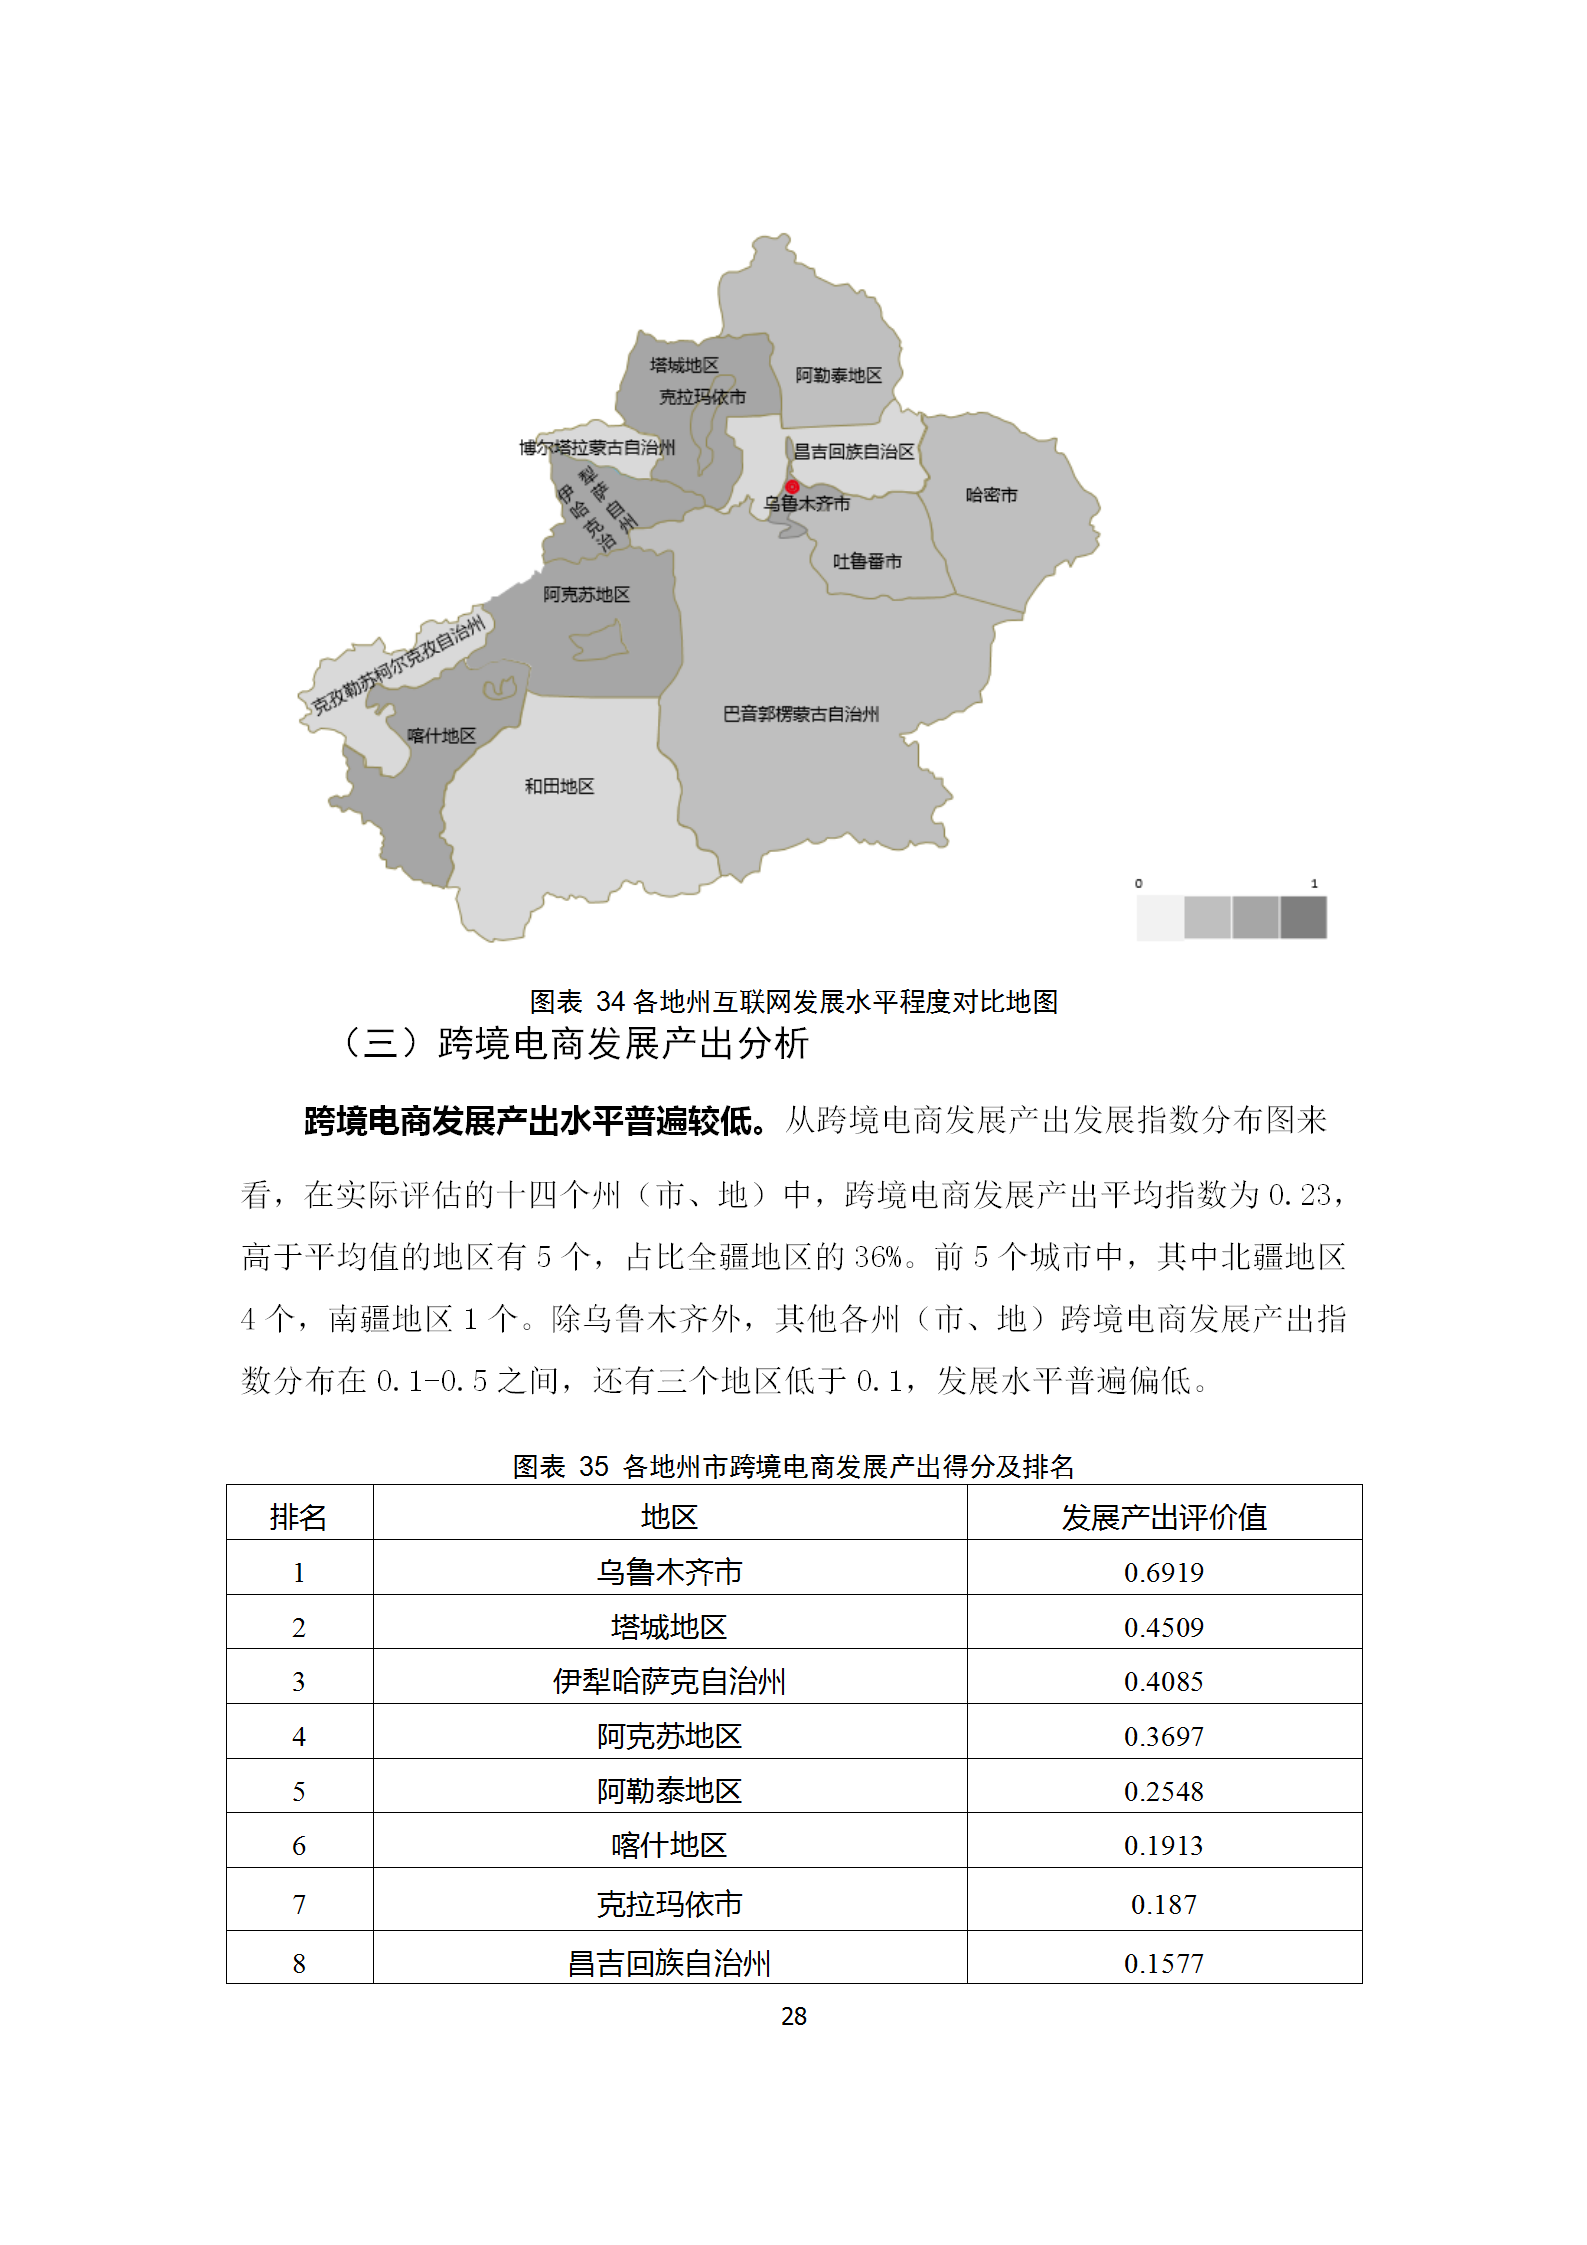 新疆跨境电子商务发展调研报告(2019)_31.png